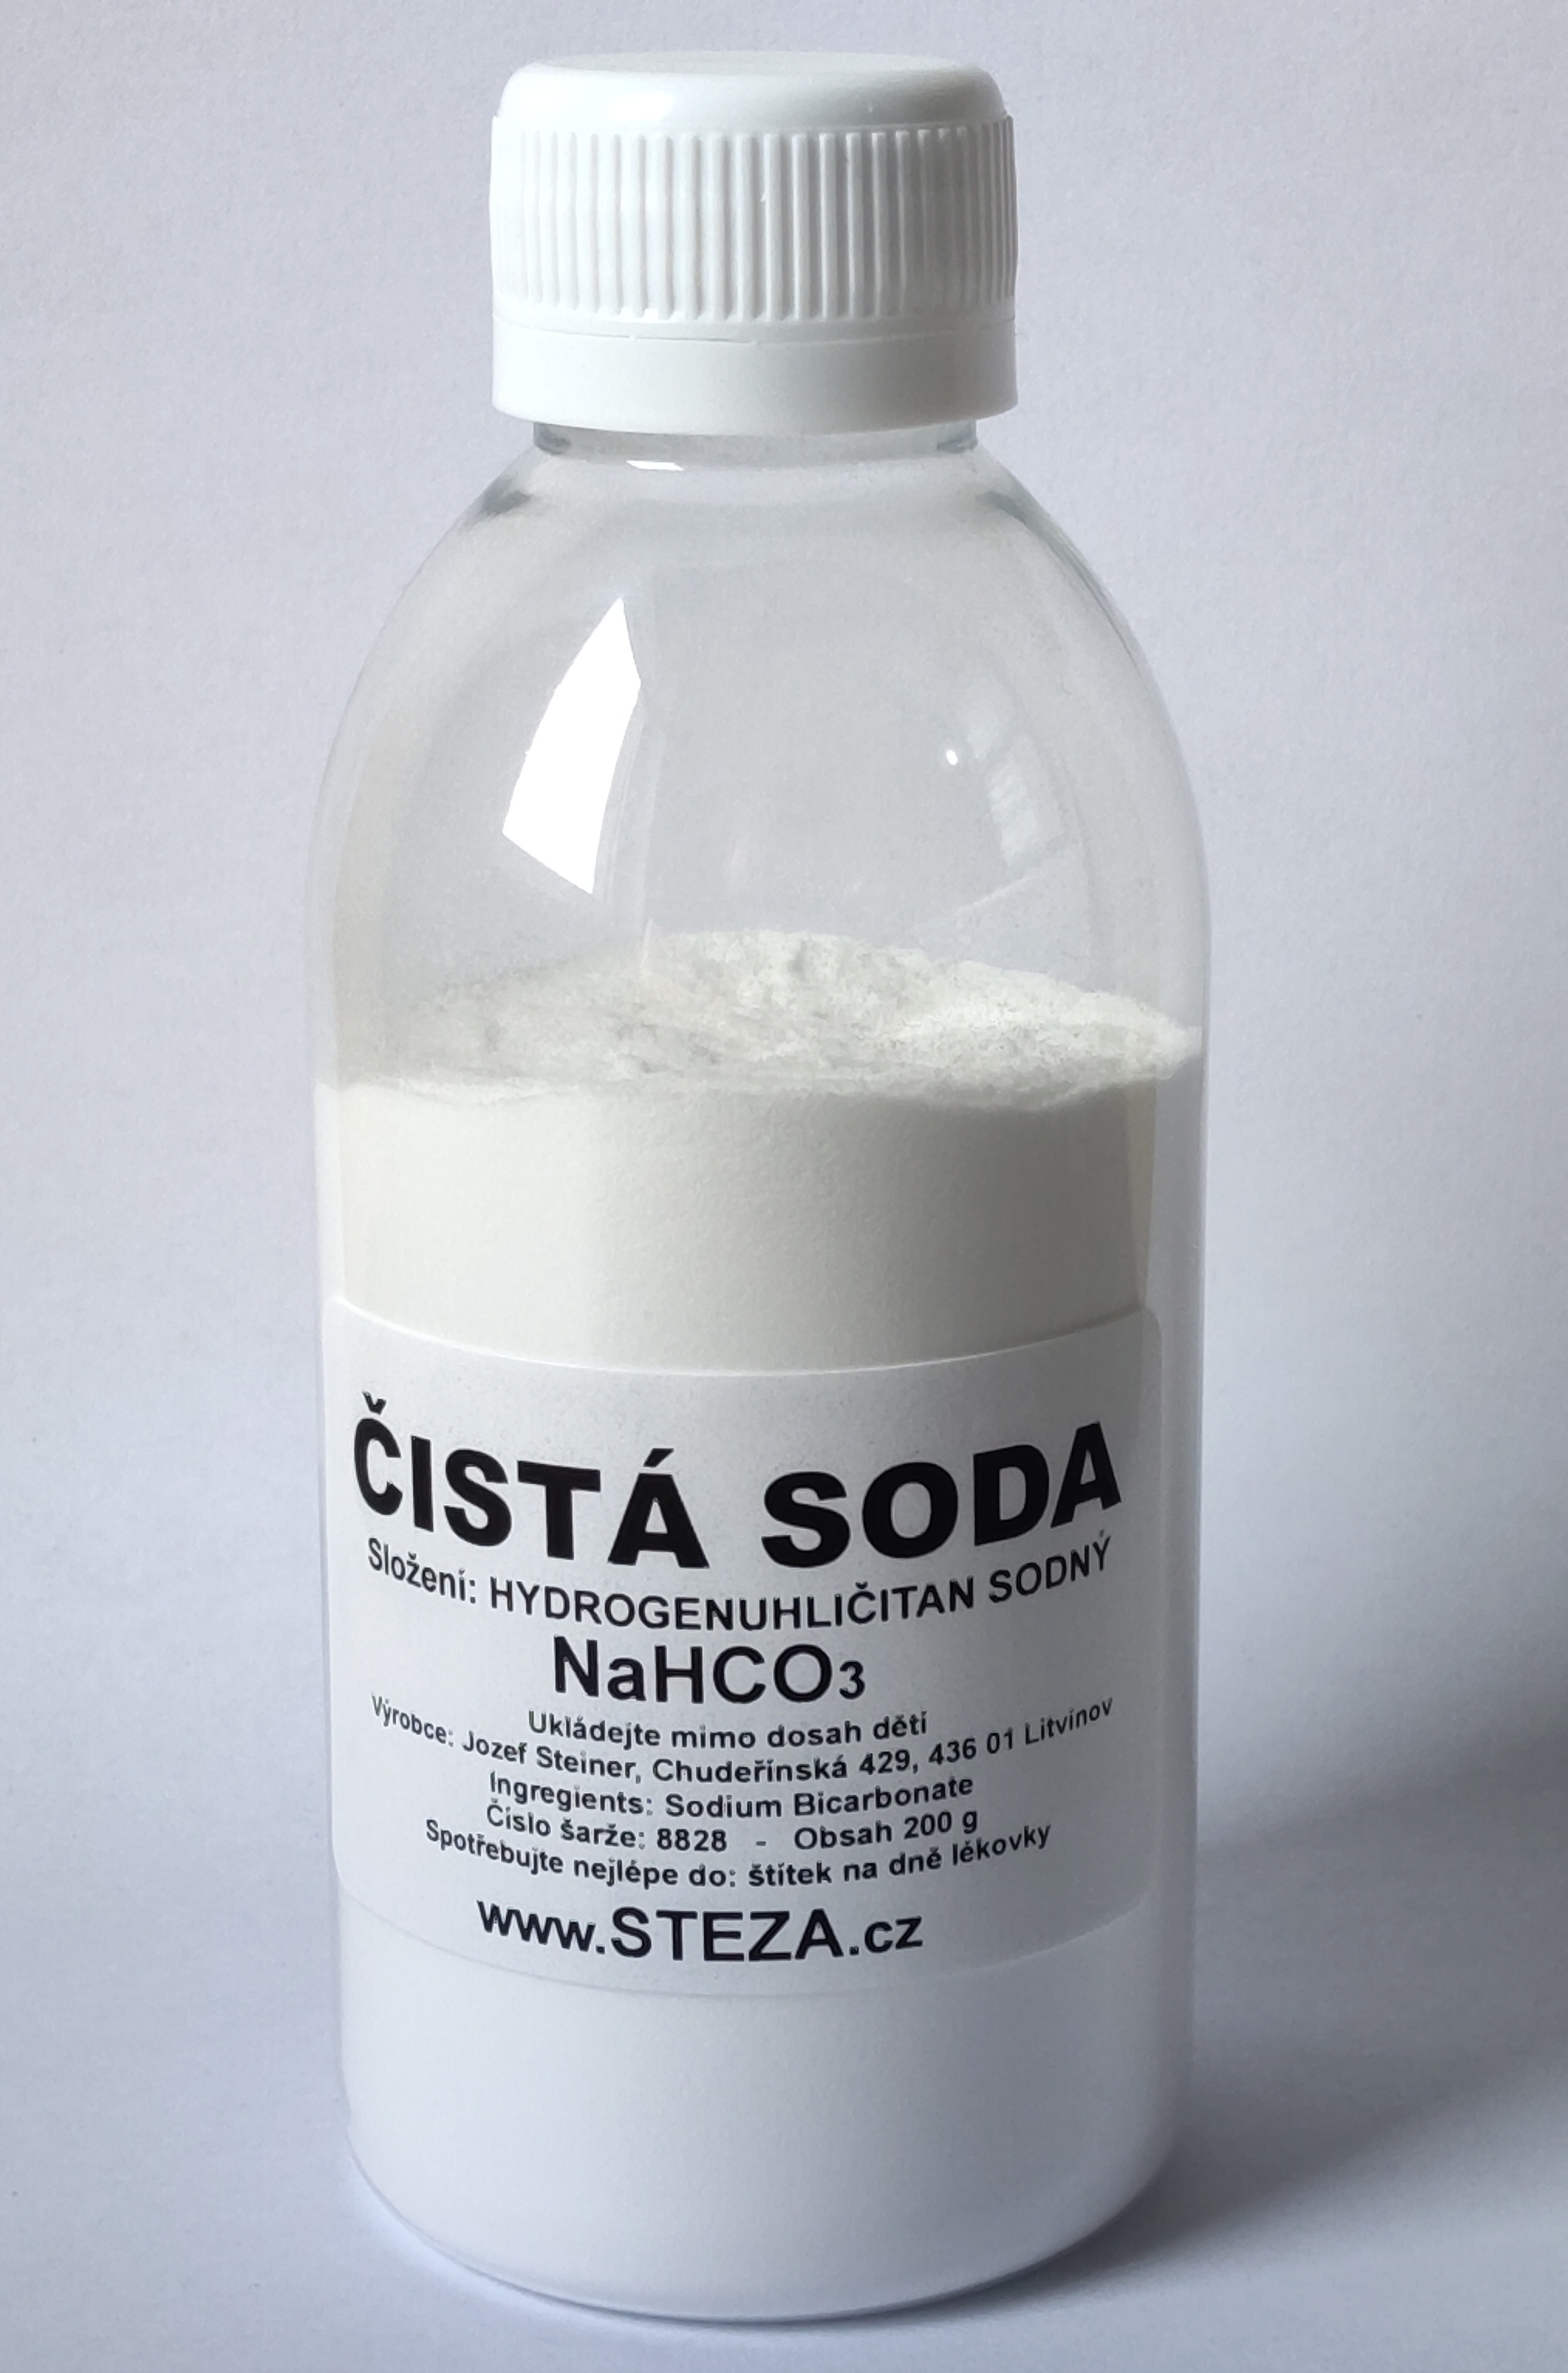 STEZA - Čistá soda 1000g NaHCO3